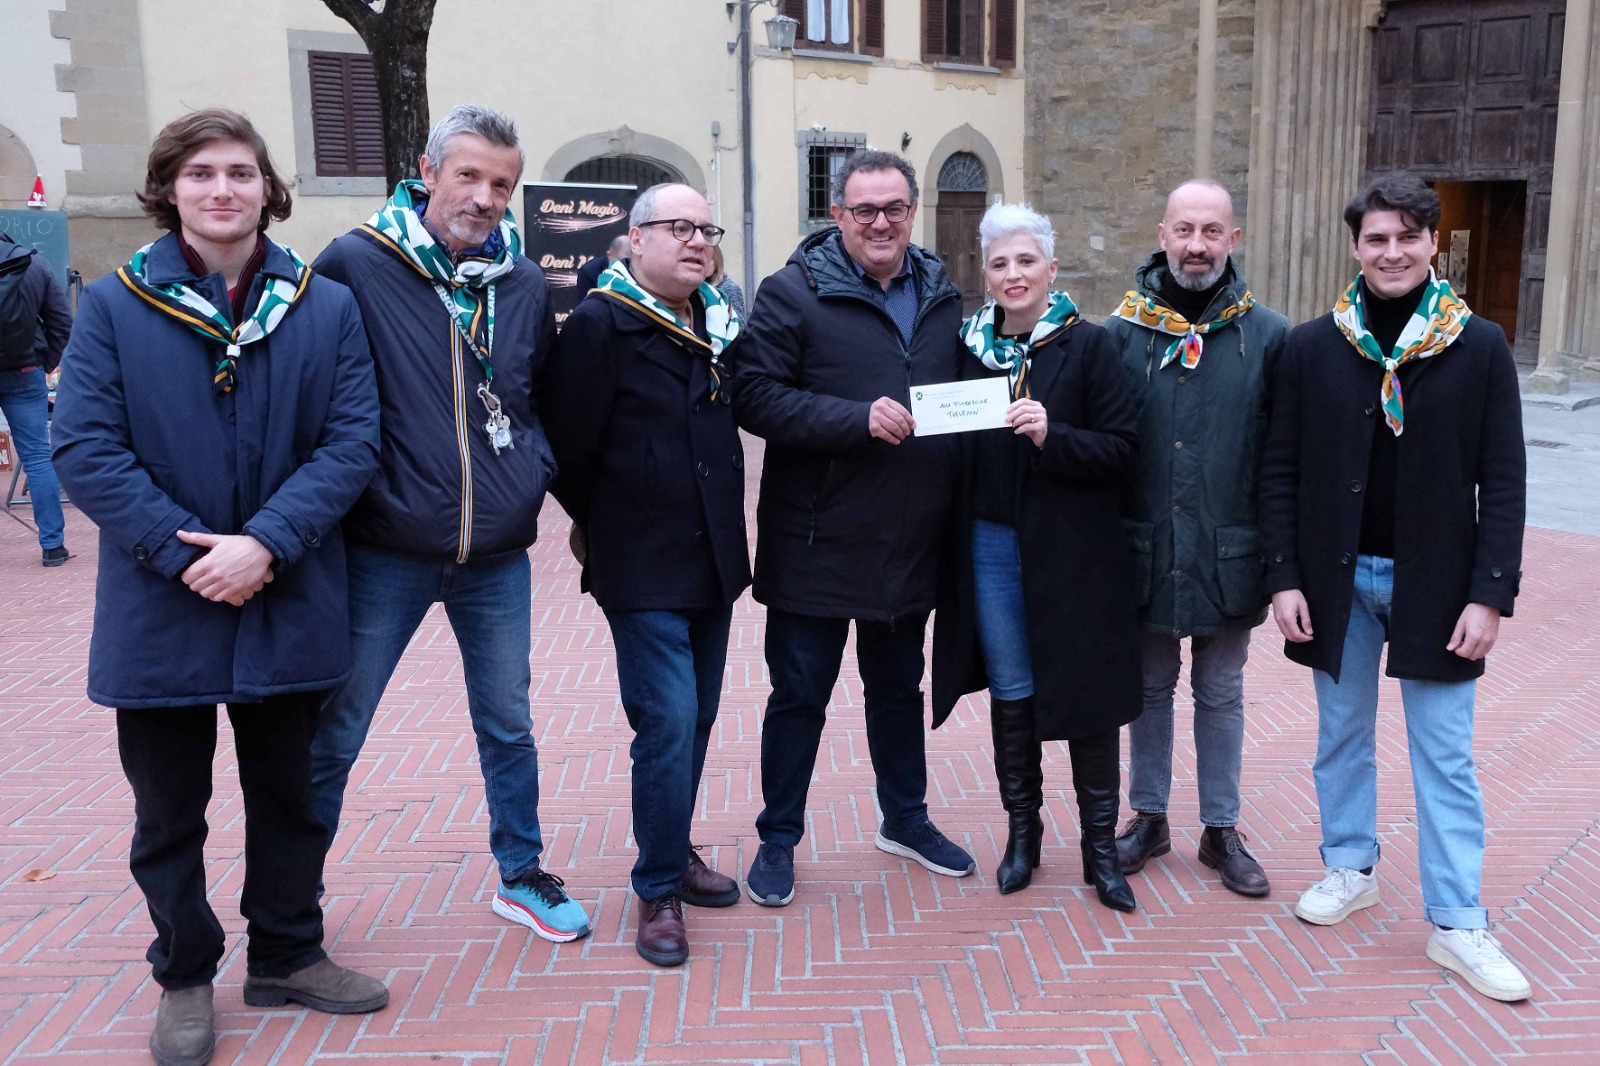 Donazione Casa Thevenin premio Tului 2022 - Arezzo